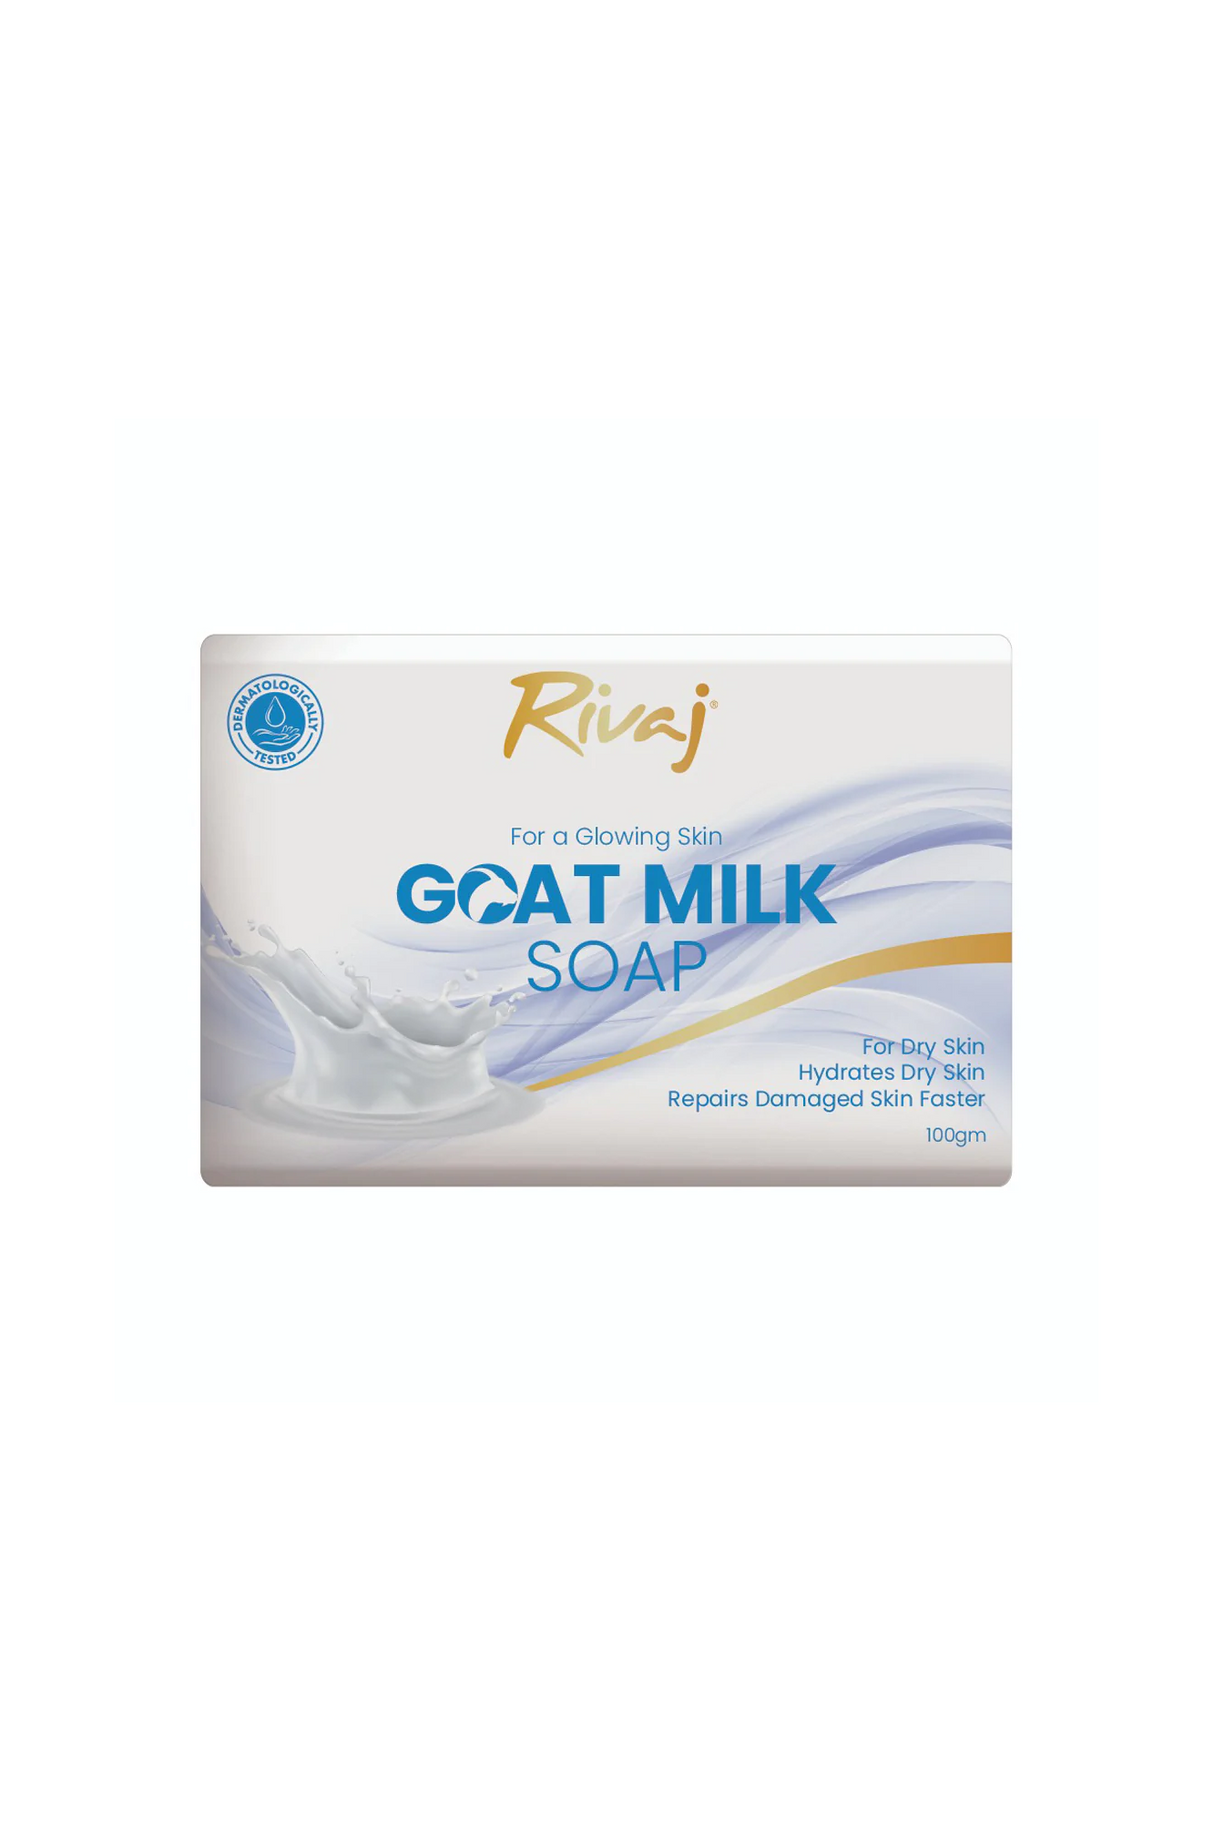 rivaj uk soap goat milk 100g